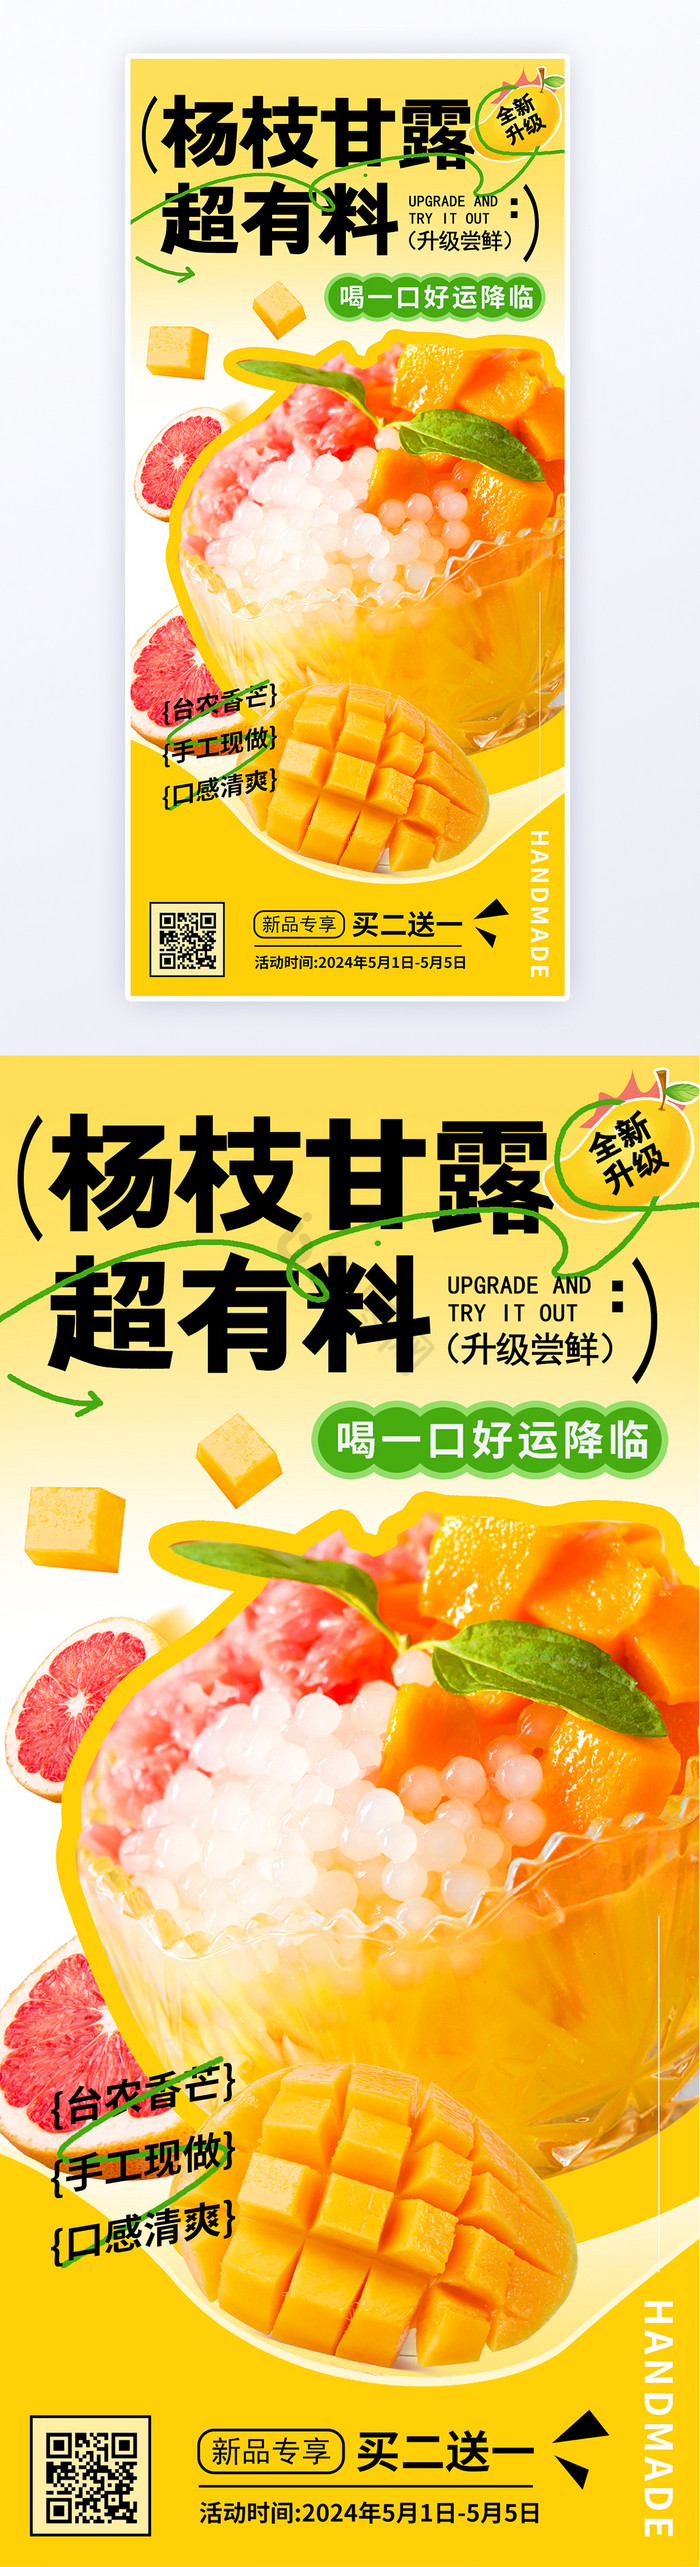 夏日美食杨枝甘露果茶奶茶营销海报